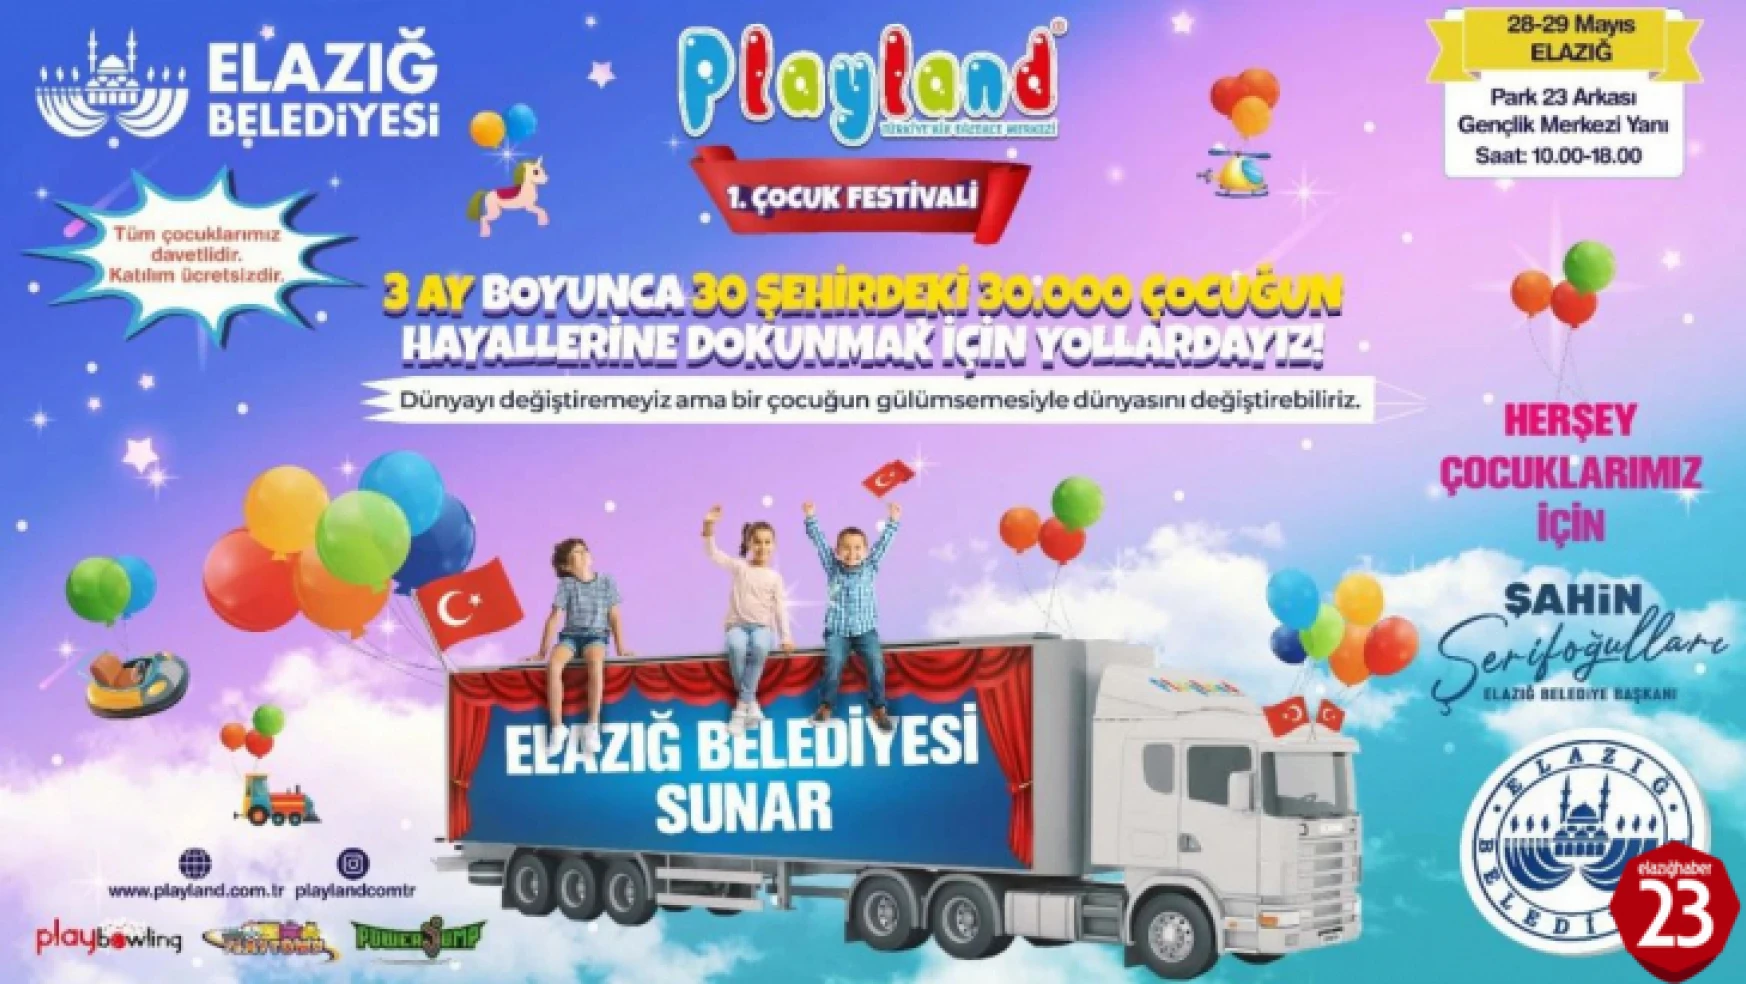 Elazığ'da 1. Çocuk Festivali Düzenleniyor